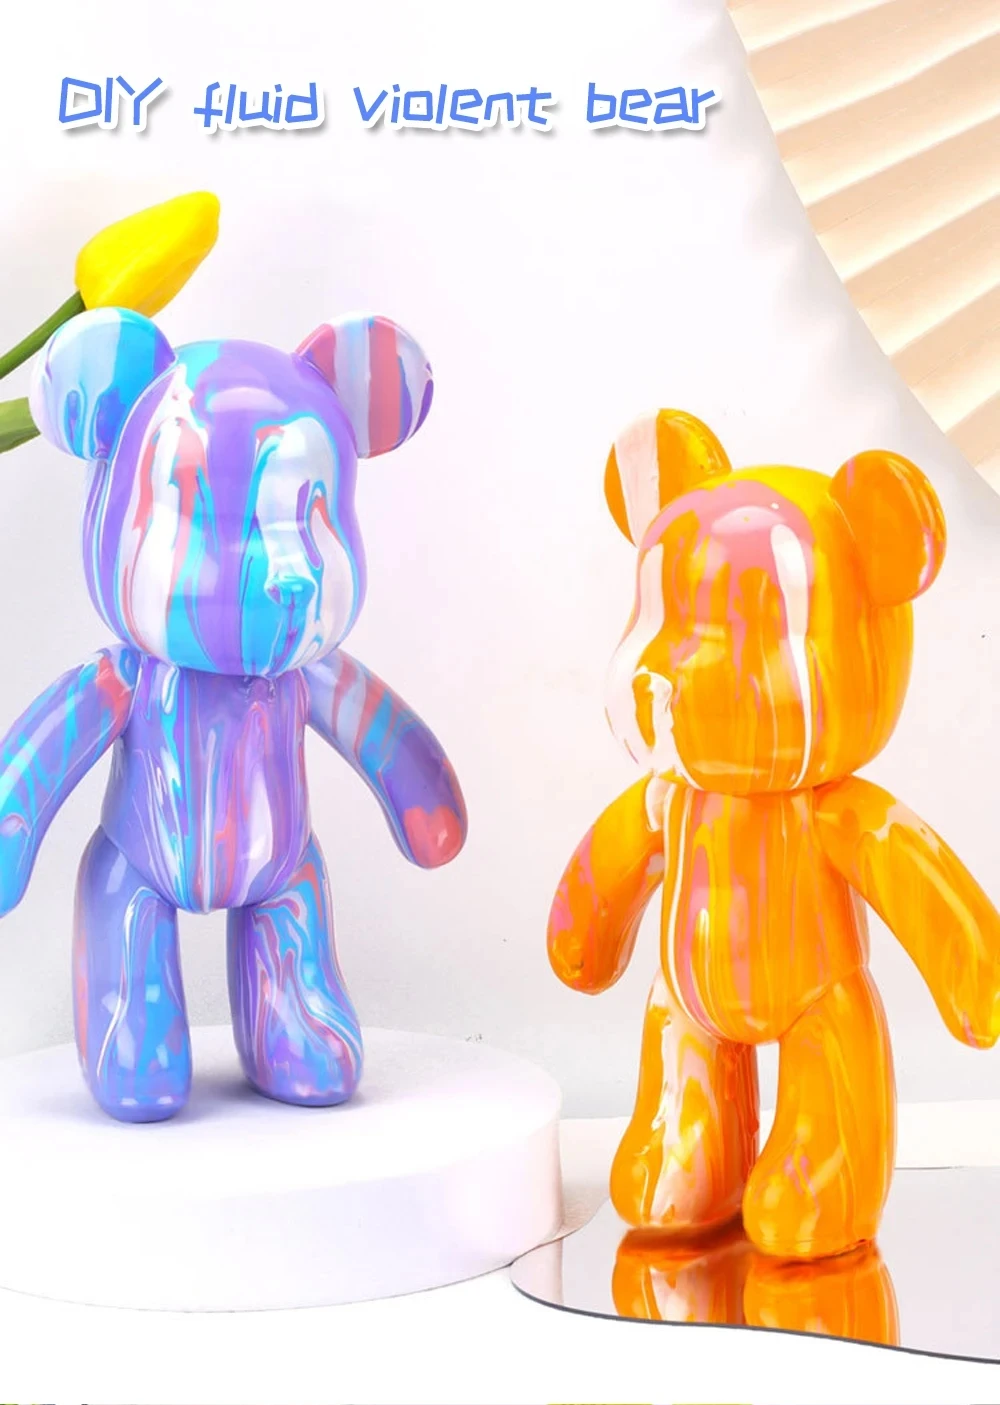 Escultura de oso fluido hecha a mano, muñeco de Bearbrick, adornos de oso violento, pintura de Graffiti, regalo de juguete para padres e hijos, decoración del hogar